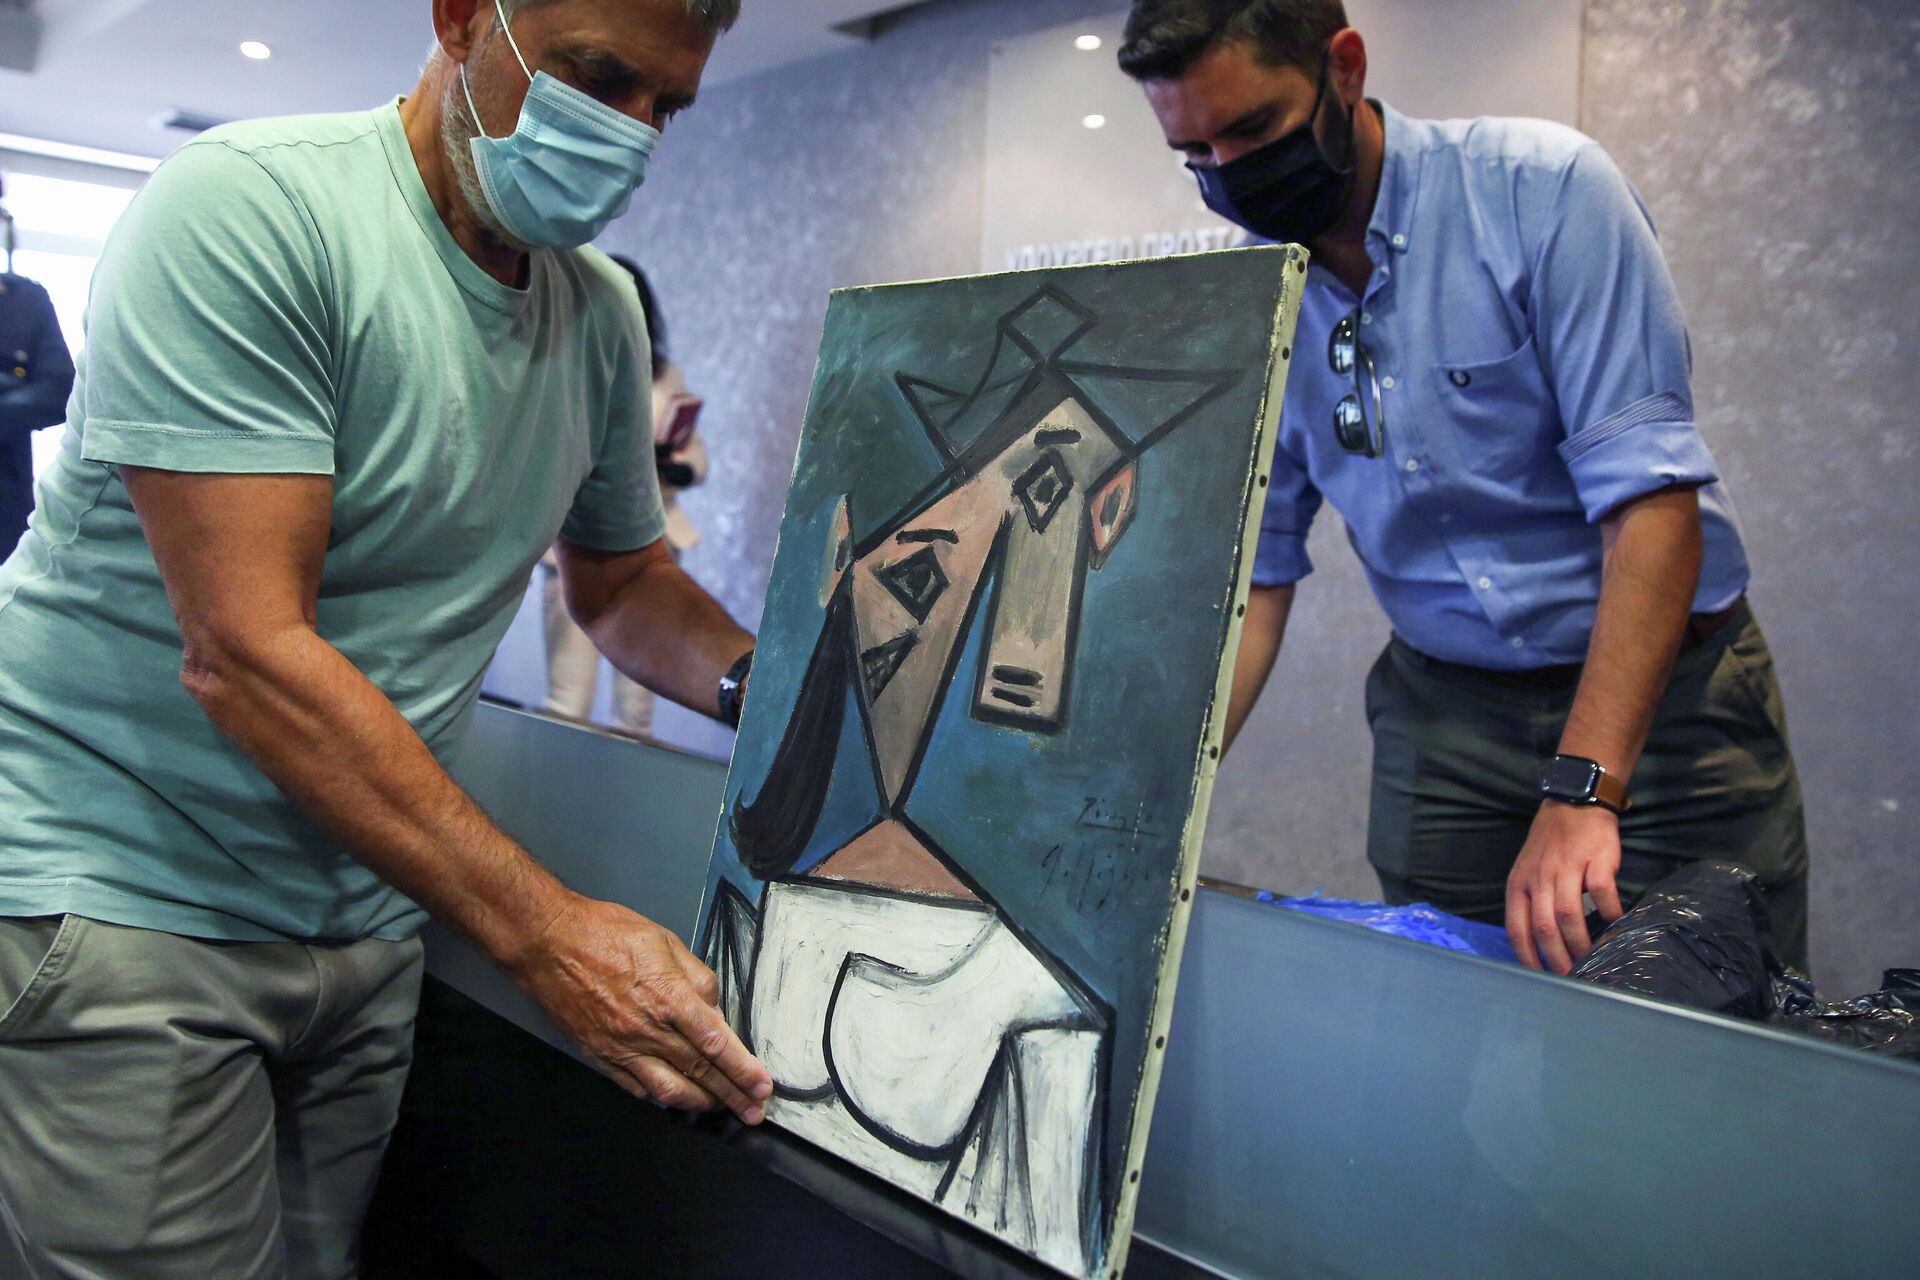 Cuadro de Picasso recuperado tras ser robado hace nueve años de la Galería Nacional de Grecia (Atenas) - Sputnik Mundo, 1920, 29.06.2021